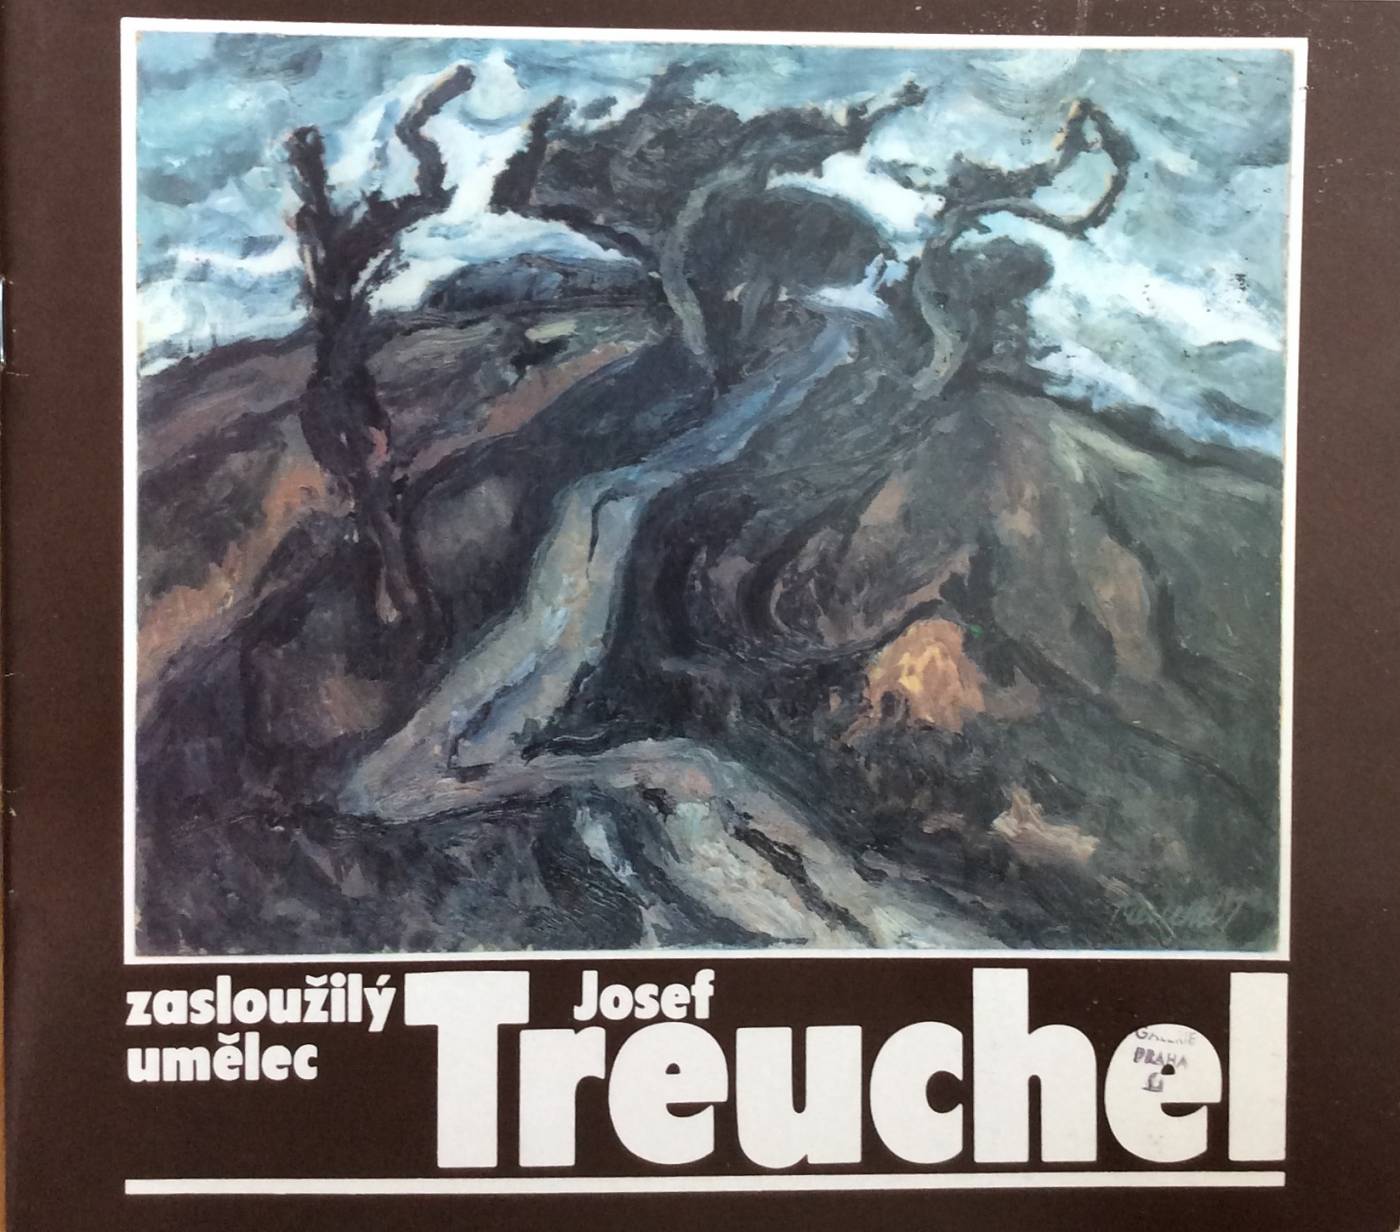 Zasloužilý umělec Josef Treuchel – výběr z malířského díla